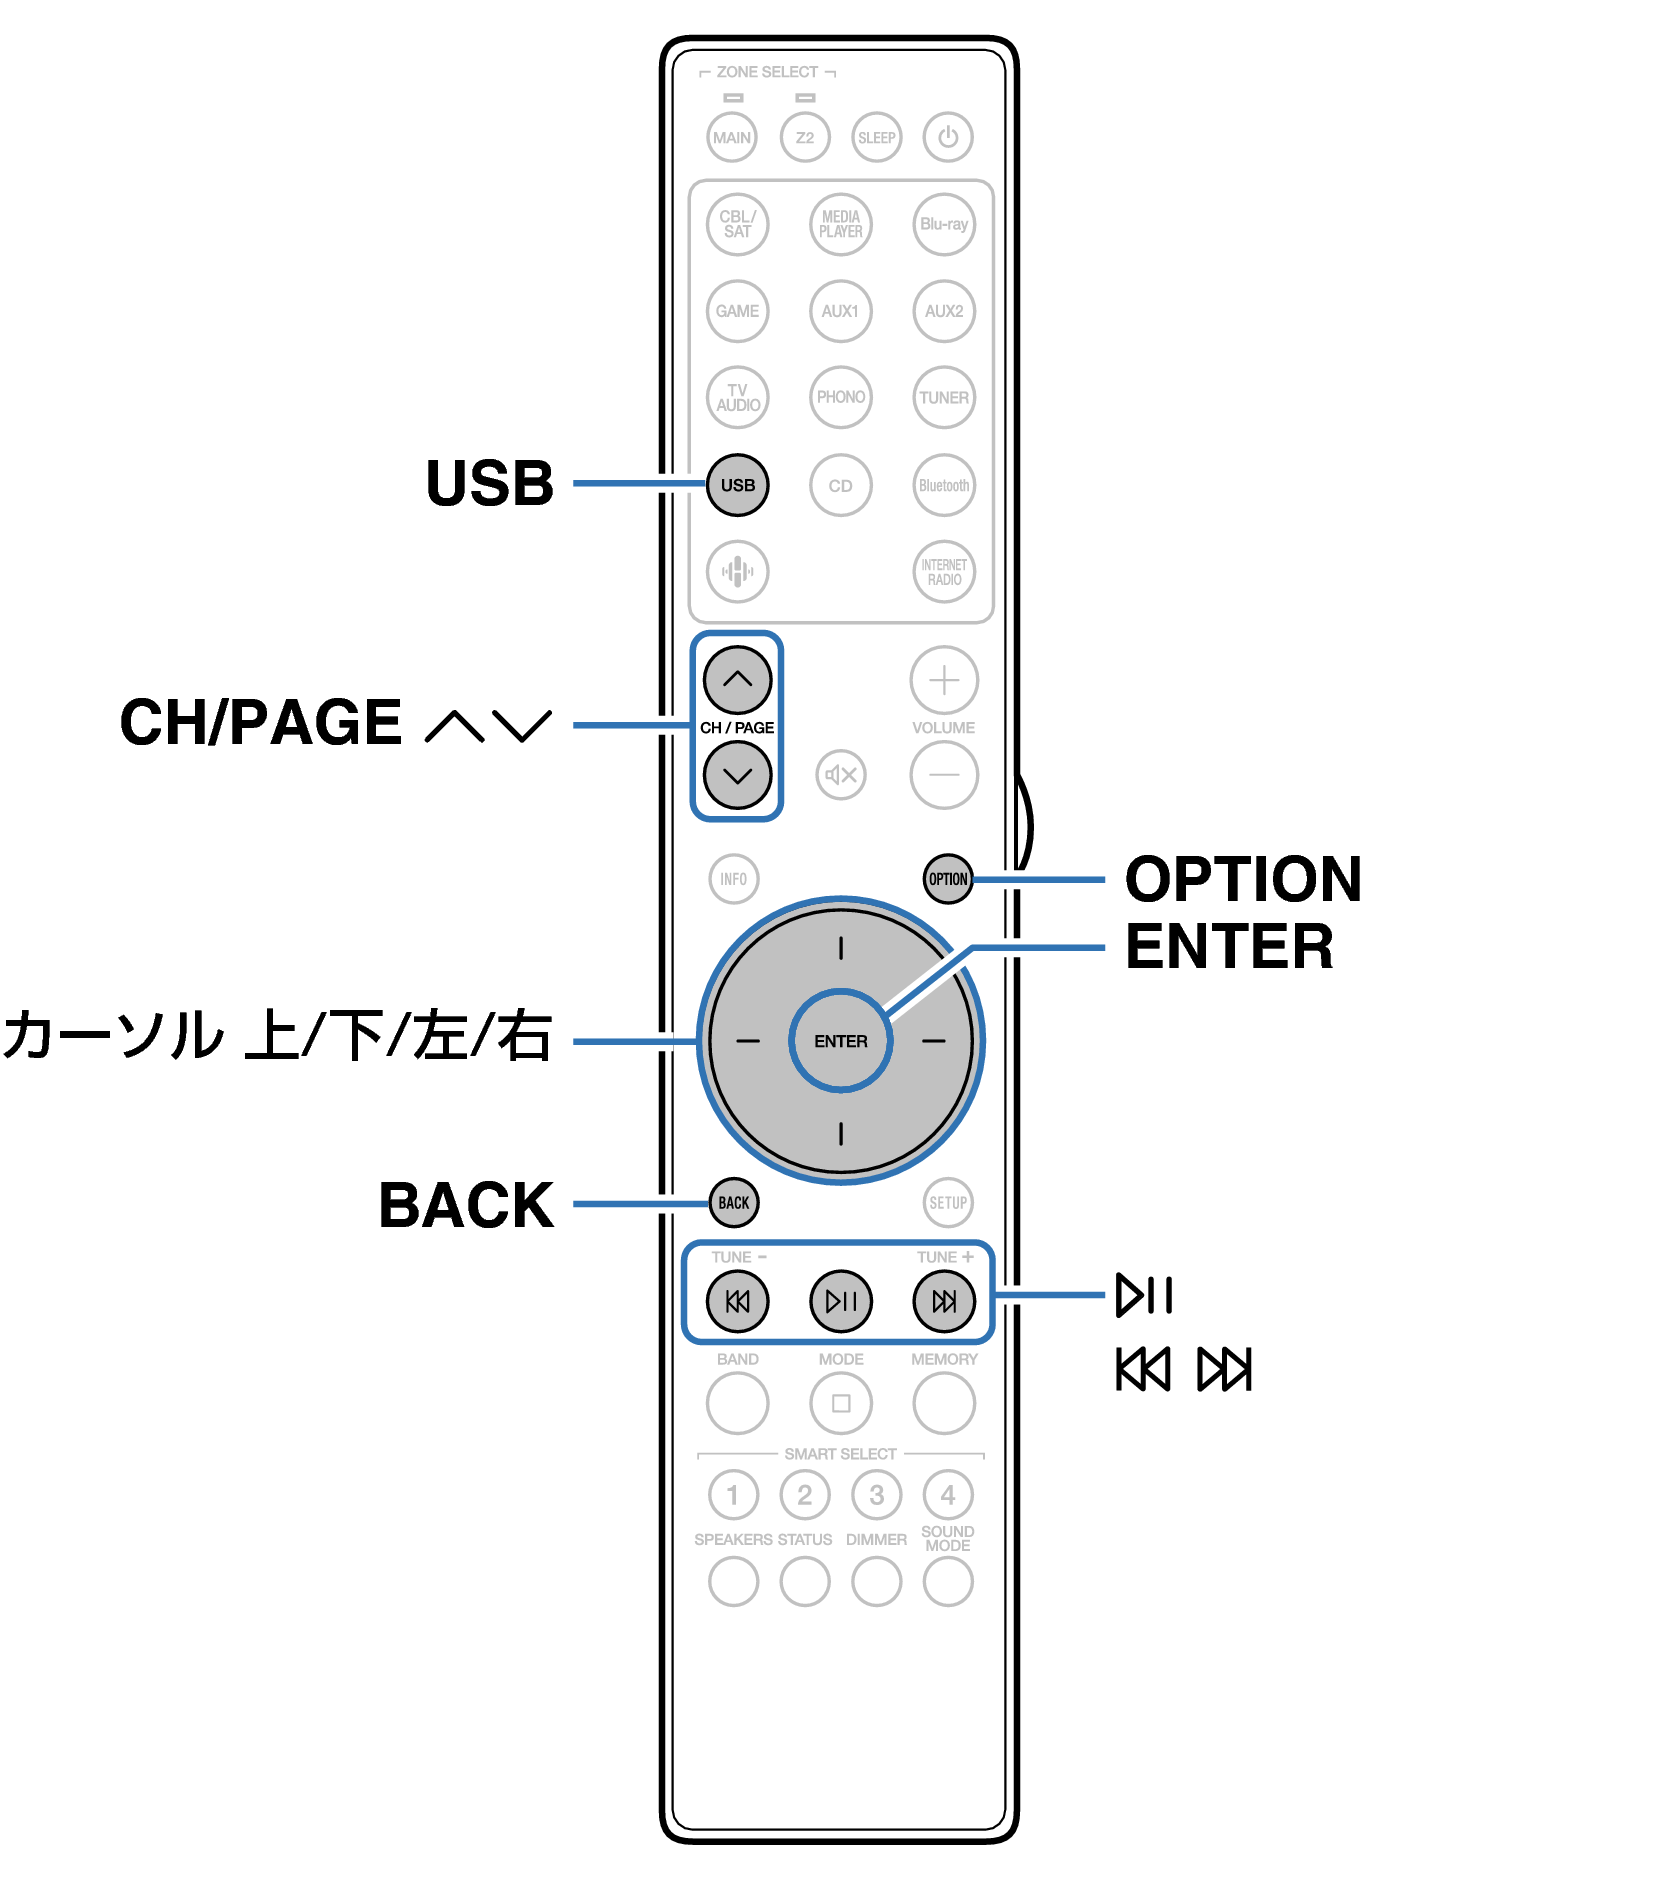 Ope USB RC052SR